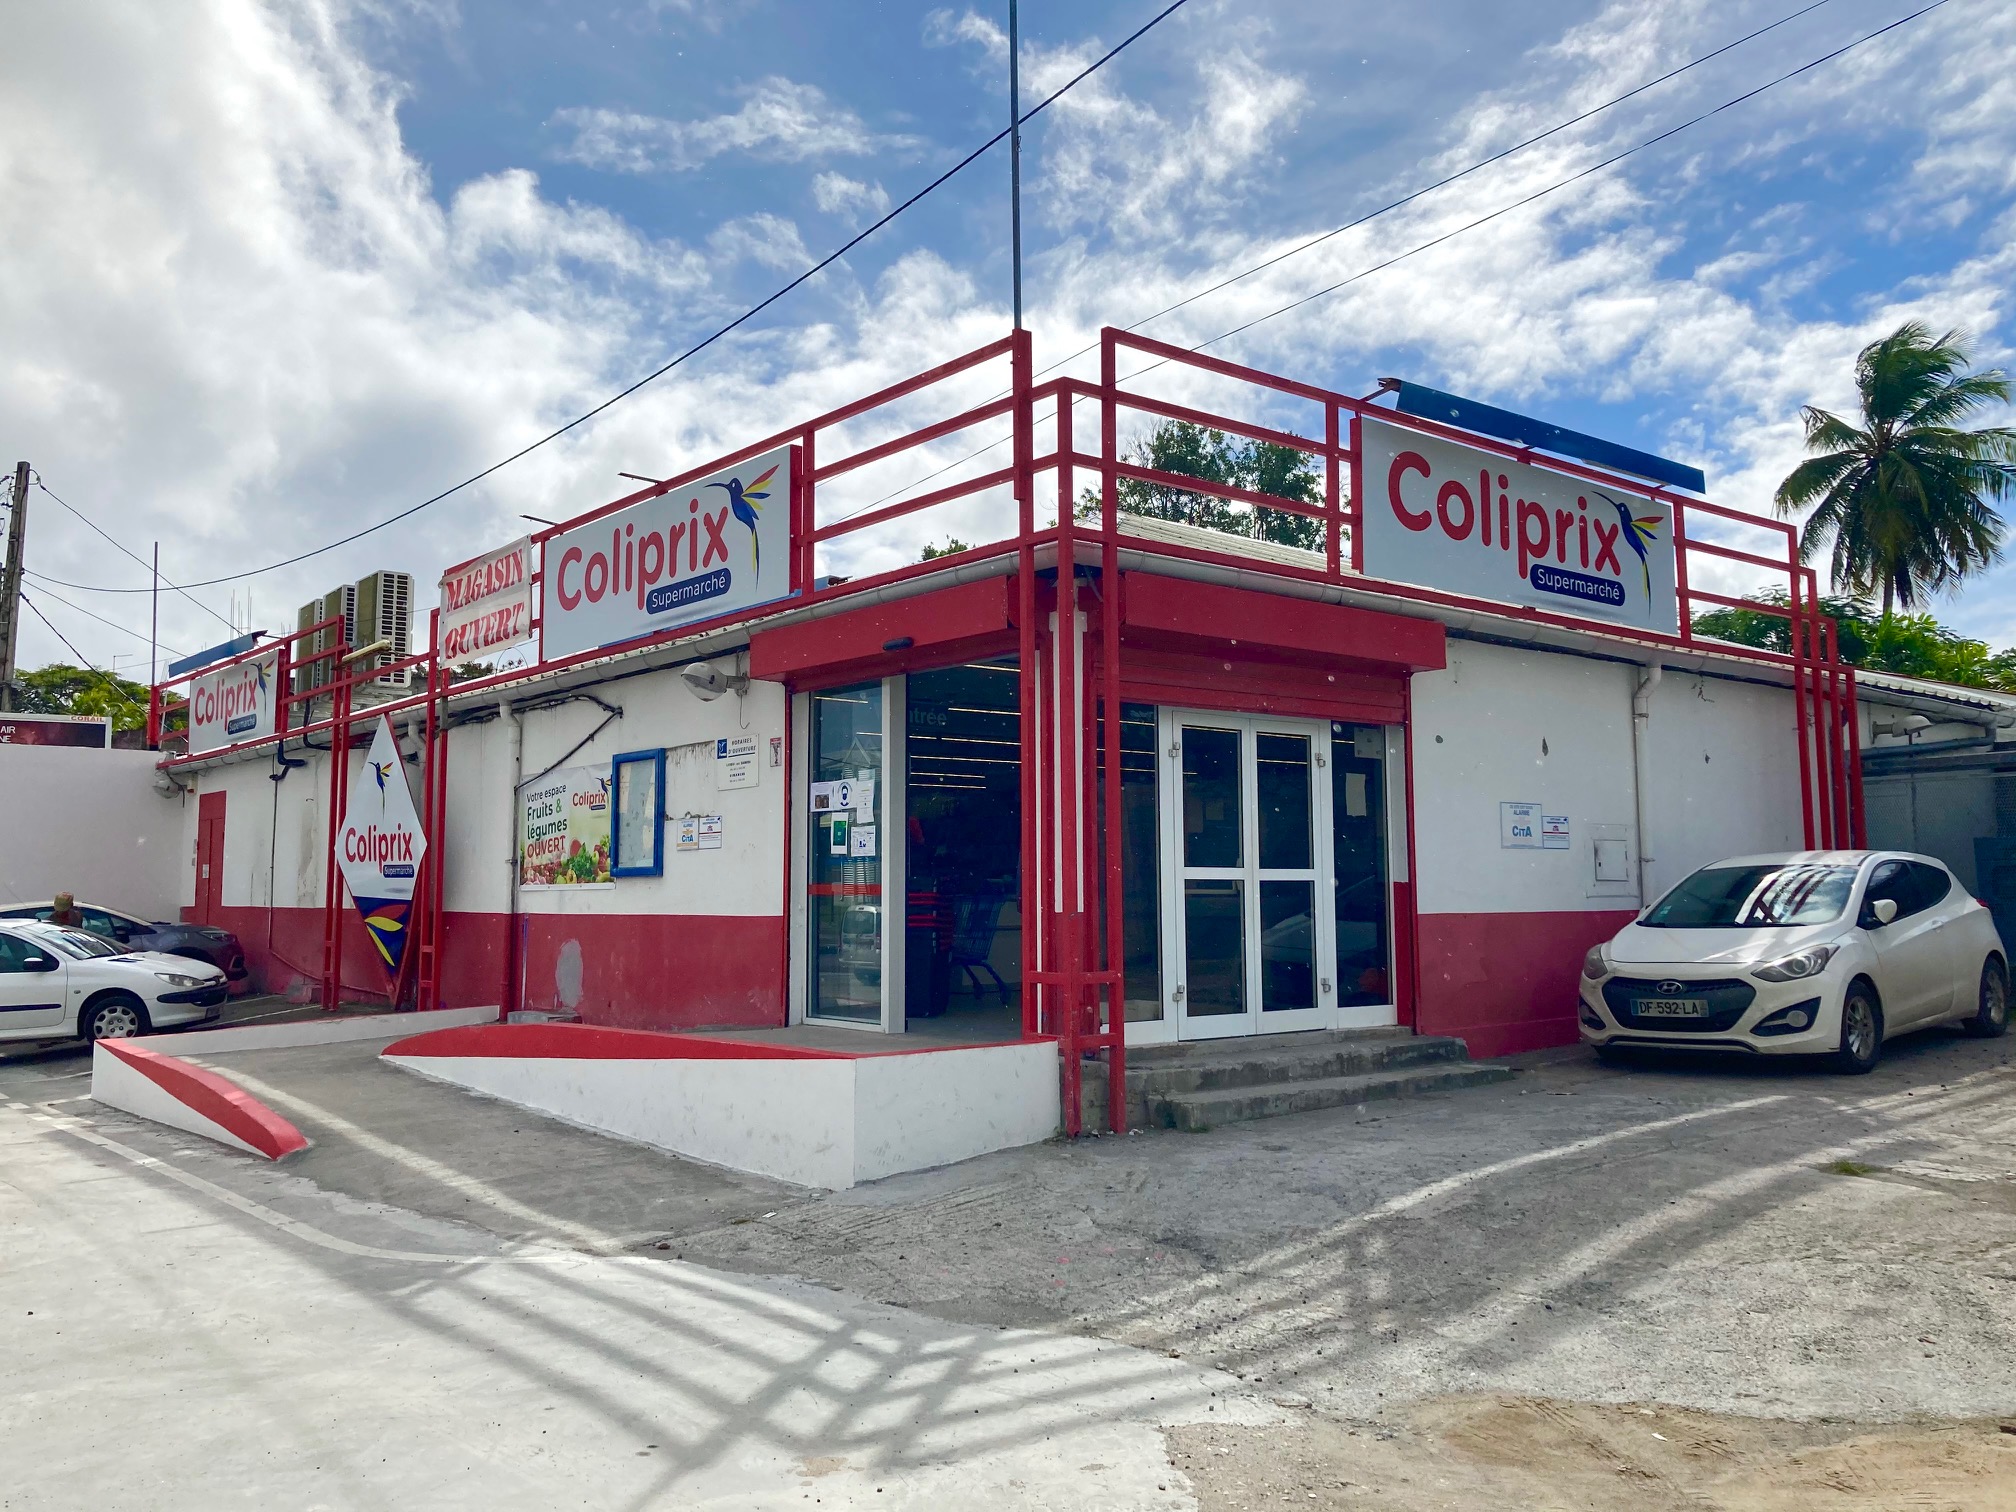     Ecomax devient Coliprix en Guadeloupe

